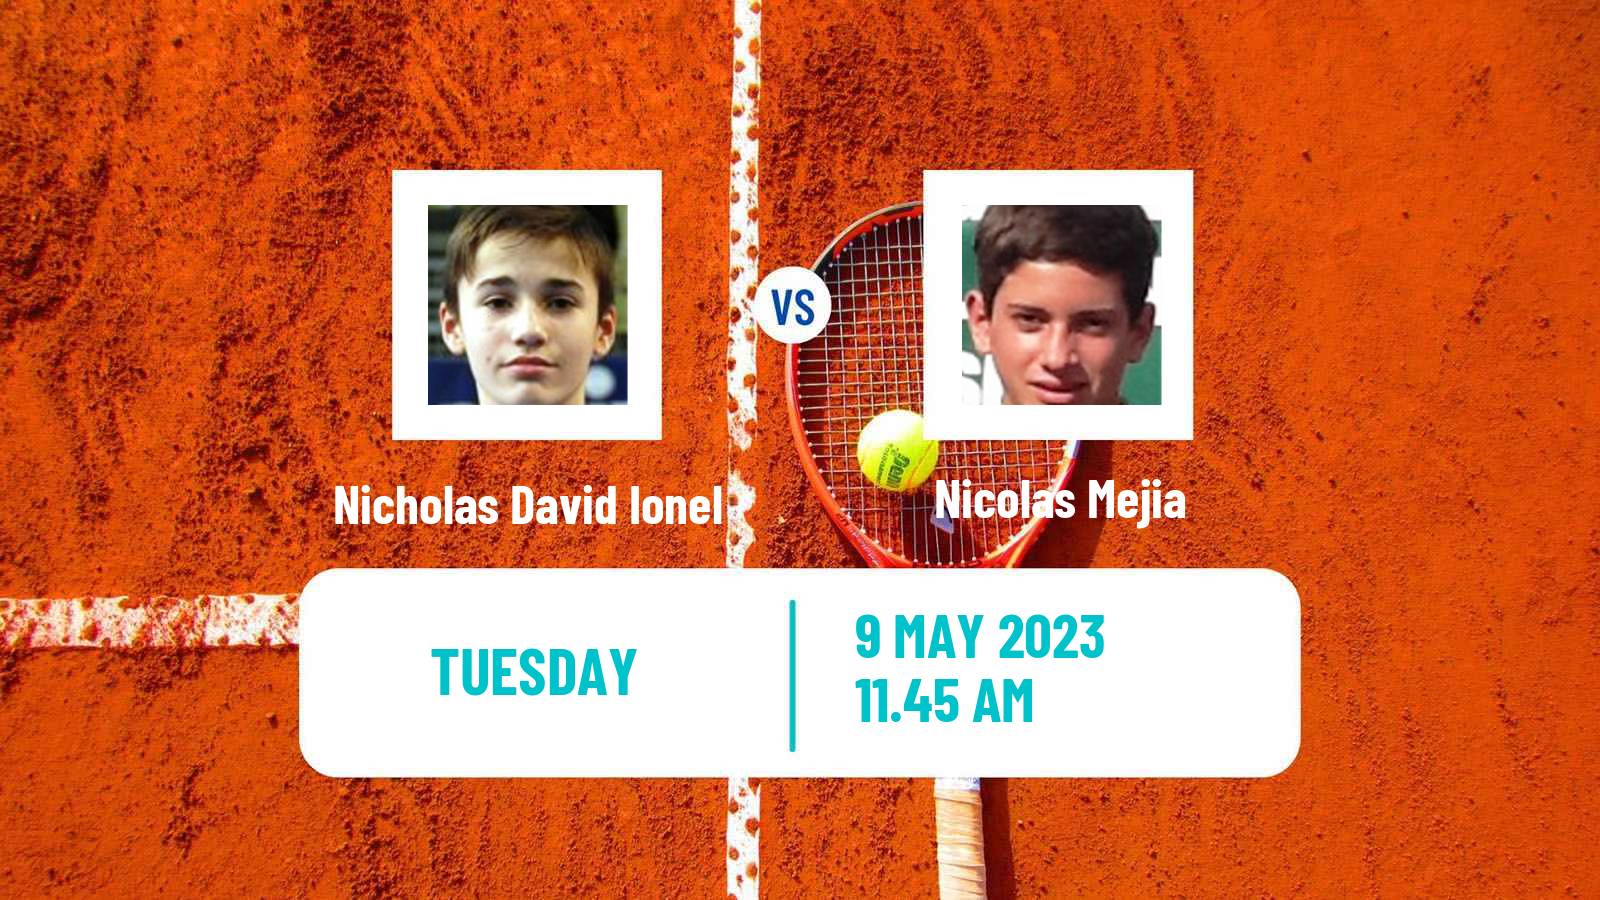 Tennis ATP Challenger Nicholas David Ionel - Nicolas Mejia